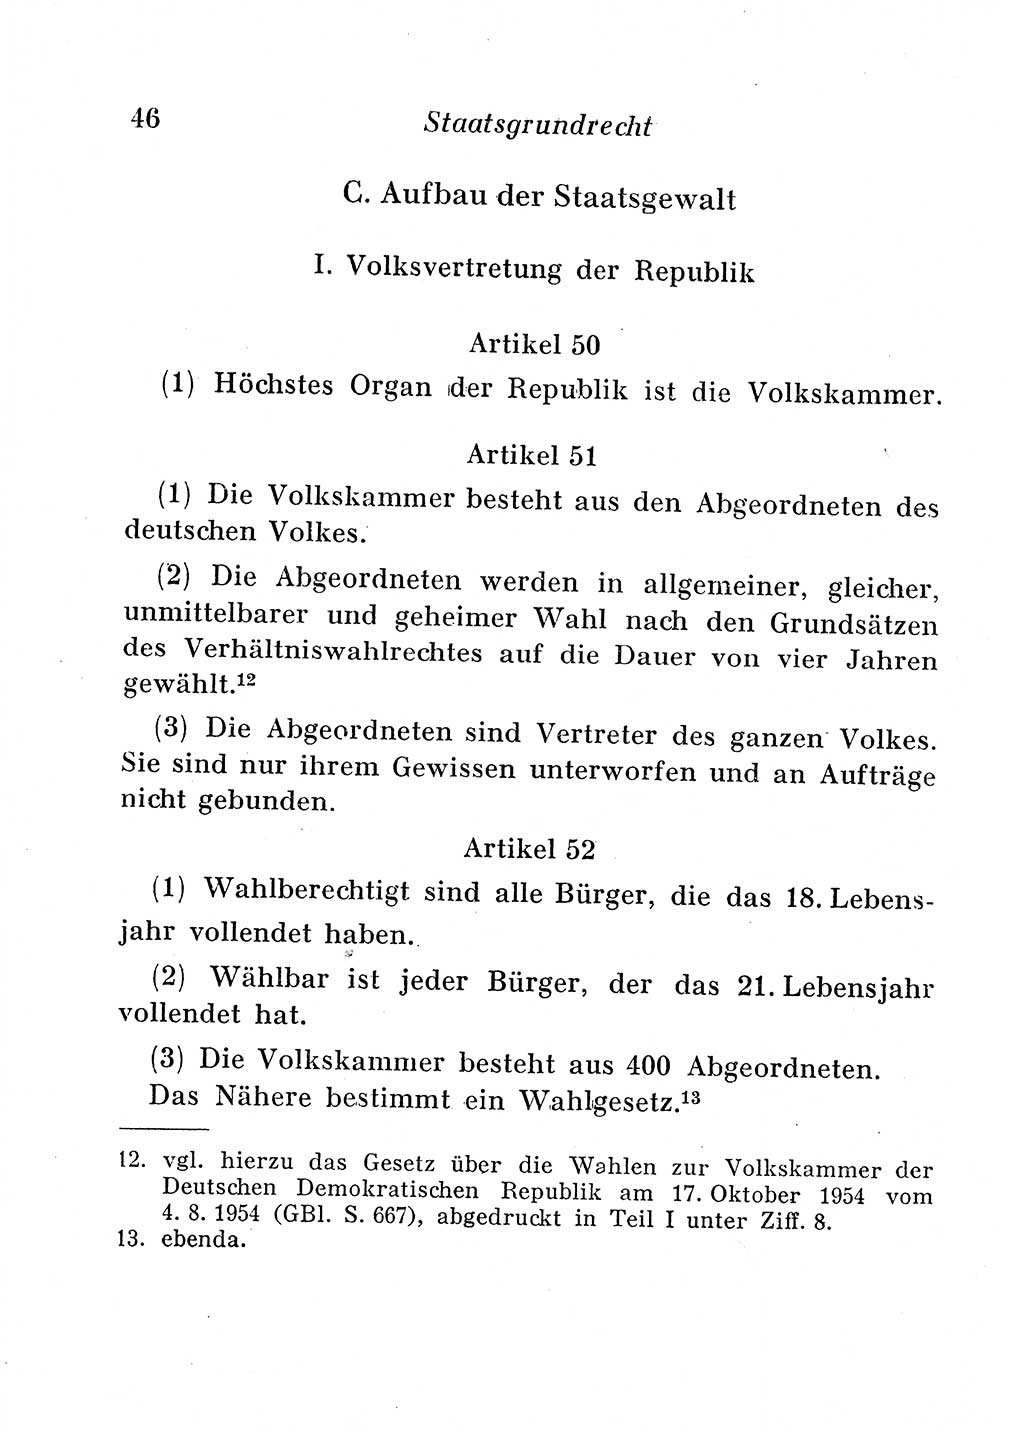 Staats- und verwaltungsrechtliche Gesetze der Deutschen Demokratischen Republik (DDR) 1958, Seite 46 (StVerwR Ges. DDR 1958, S. 46)